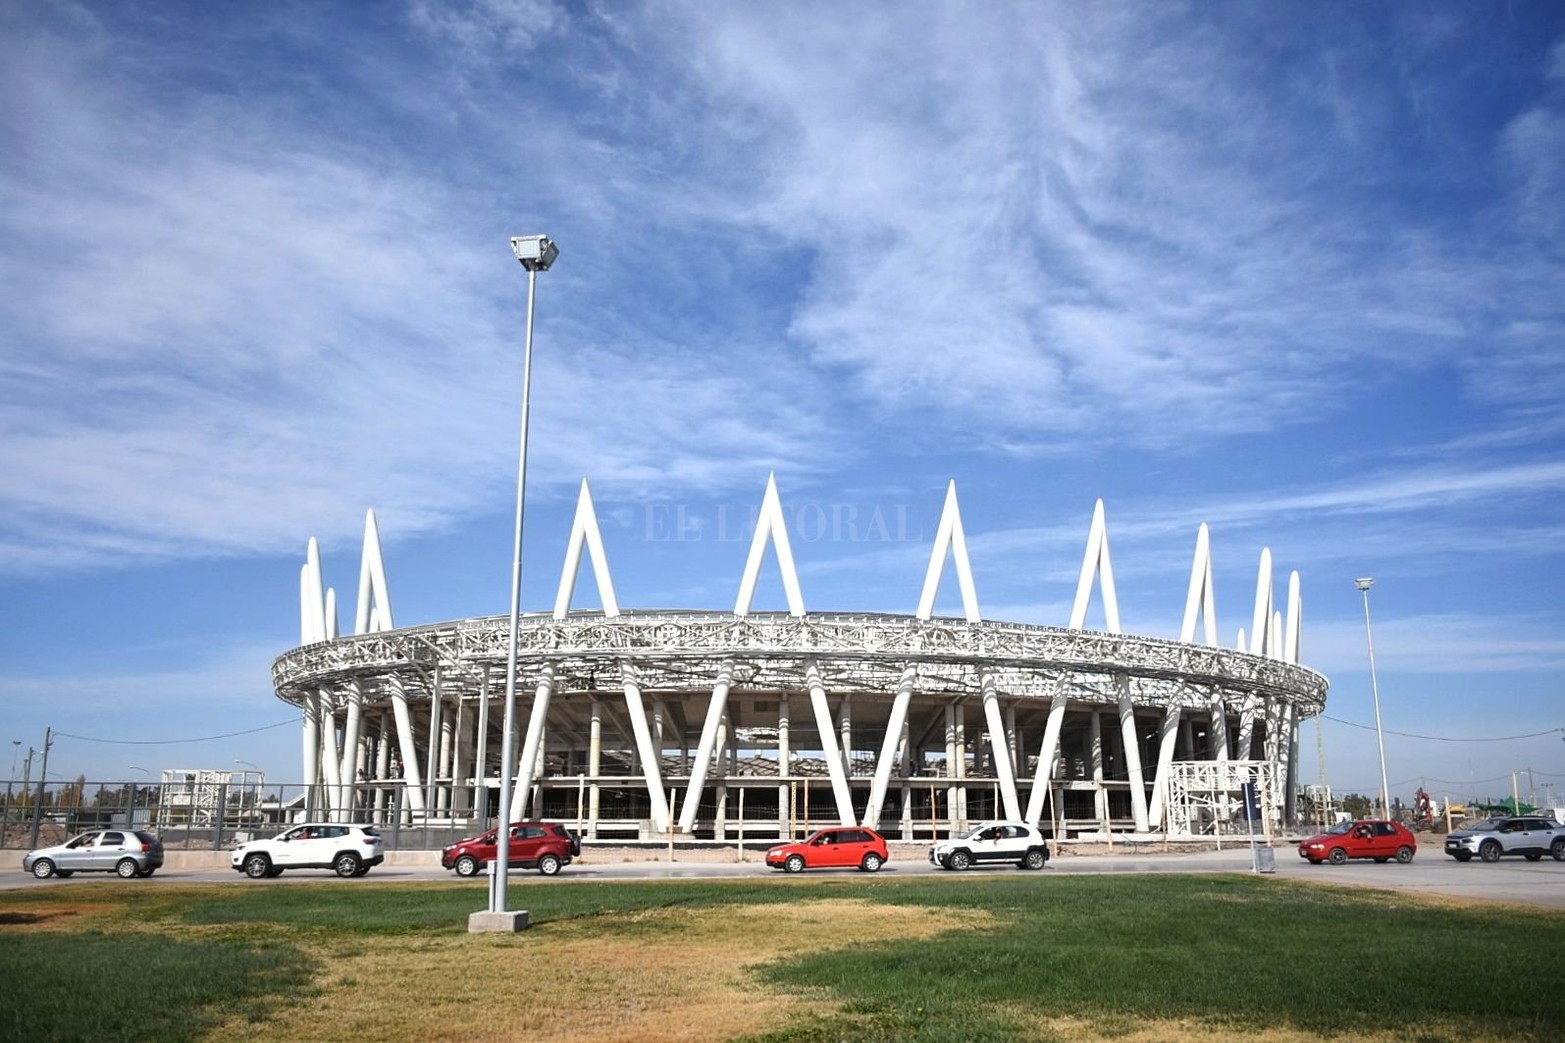 Junto al estadio de fútbol se construye un moderno velódromo cuya obra ya cuenta con el 50% de avance. El ciclismo es una las grandes pasiones deportivas de los sanjuaninos.